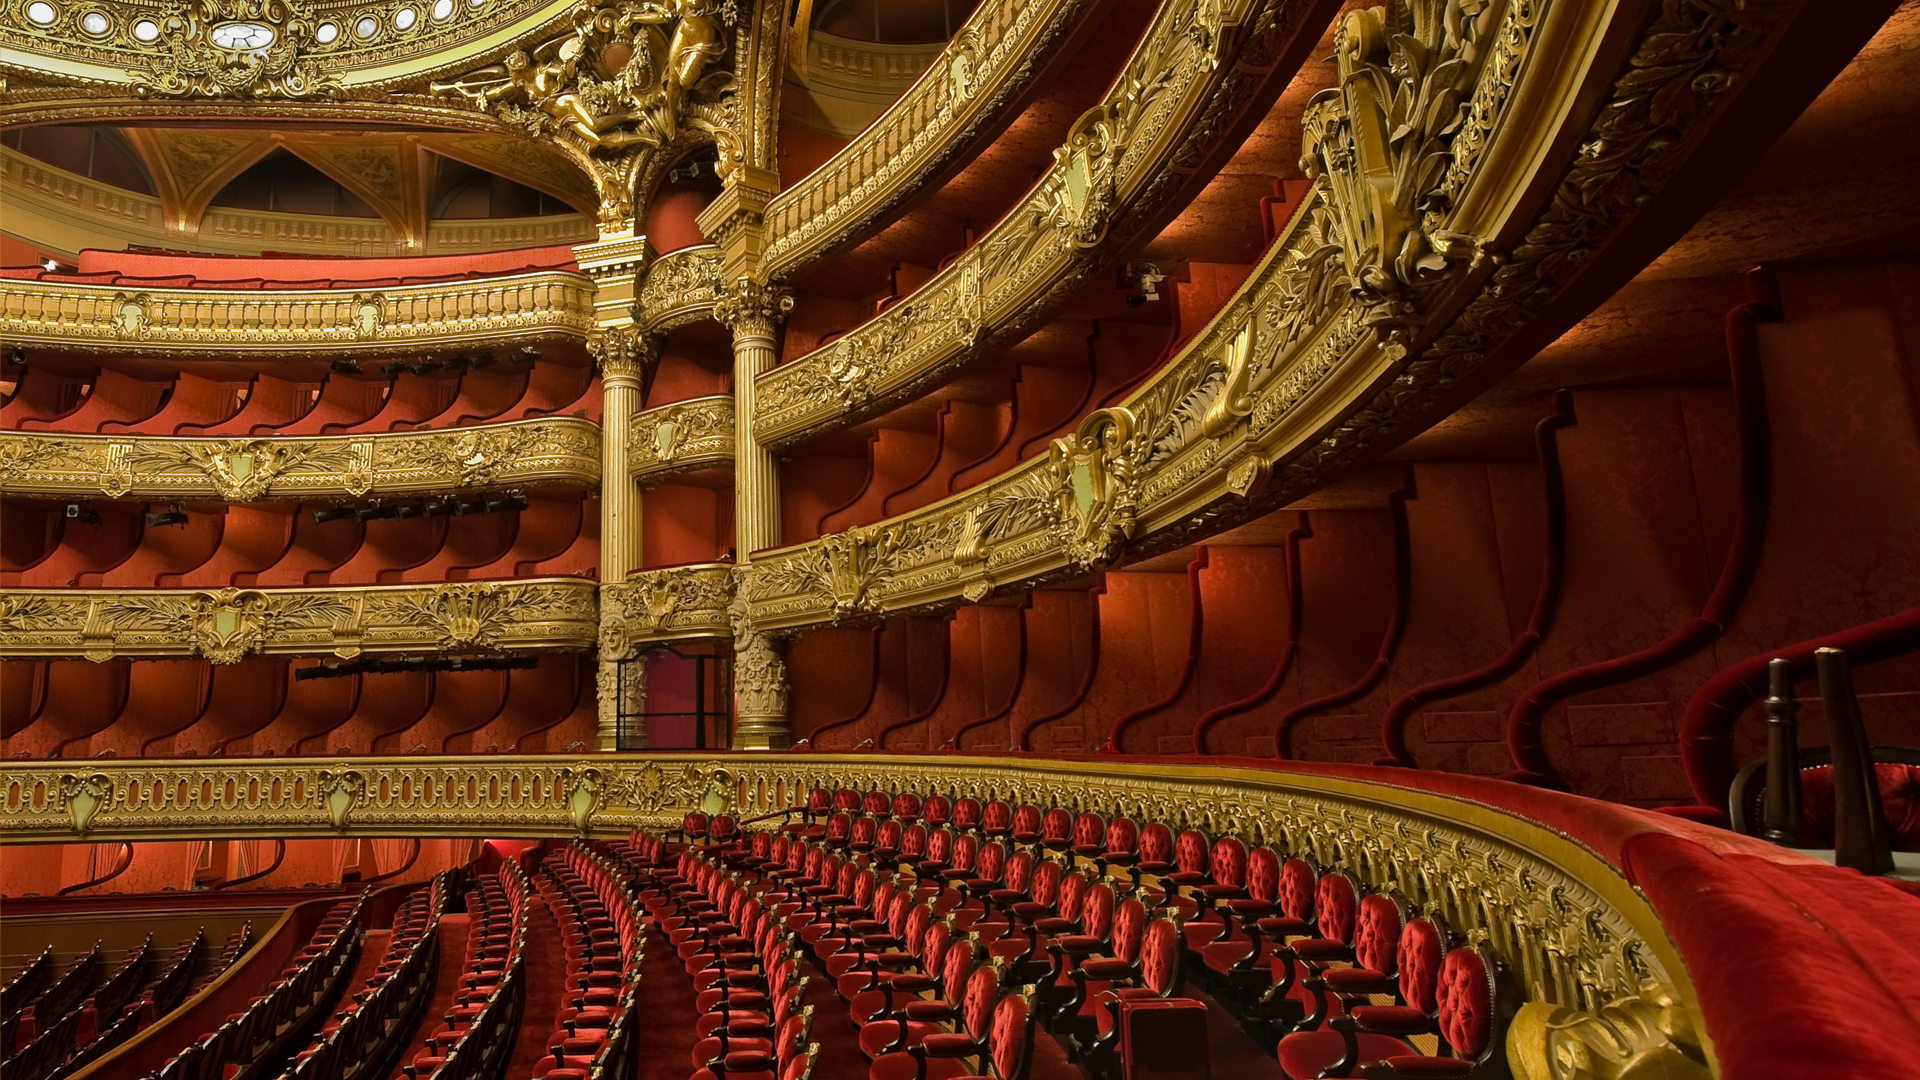 Theatre auditorium with red velvet seats